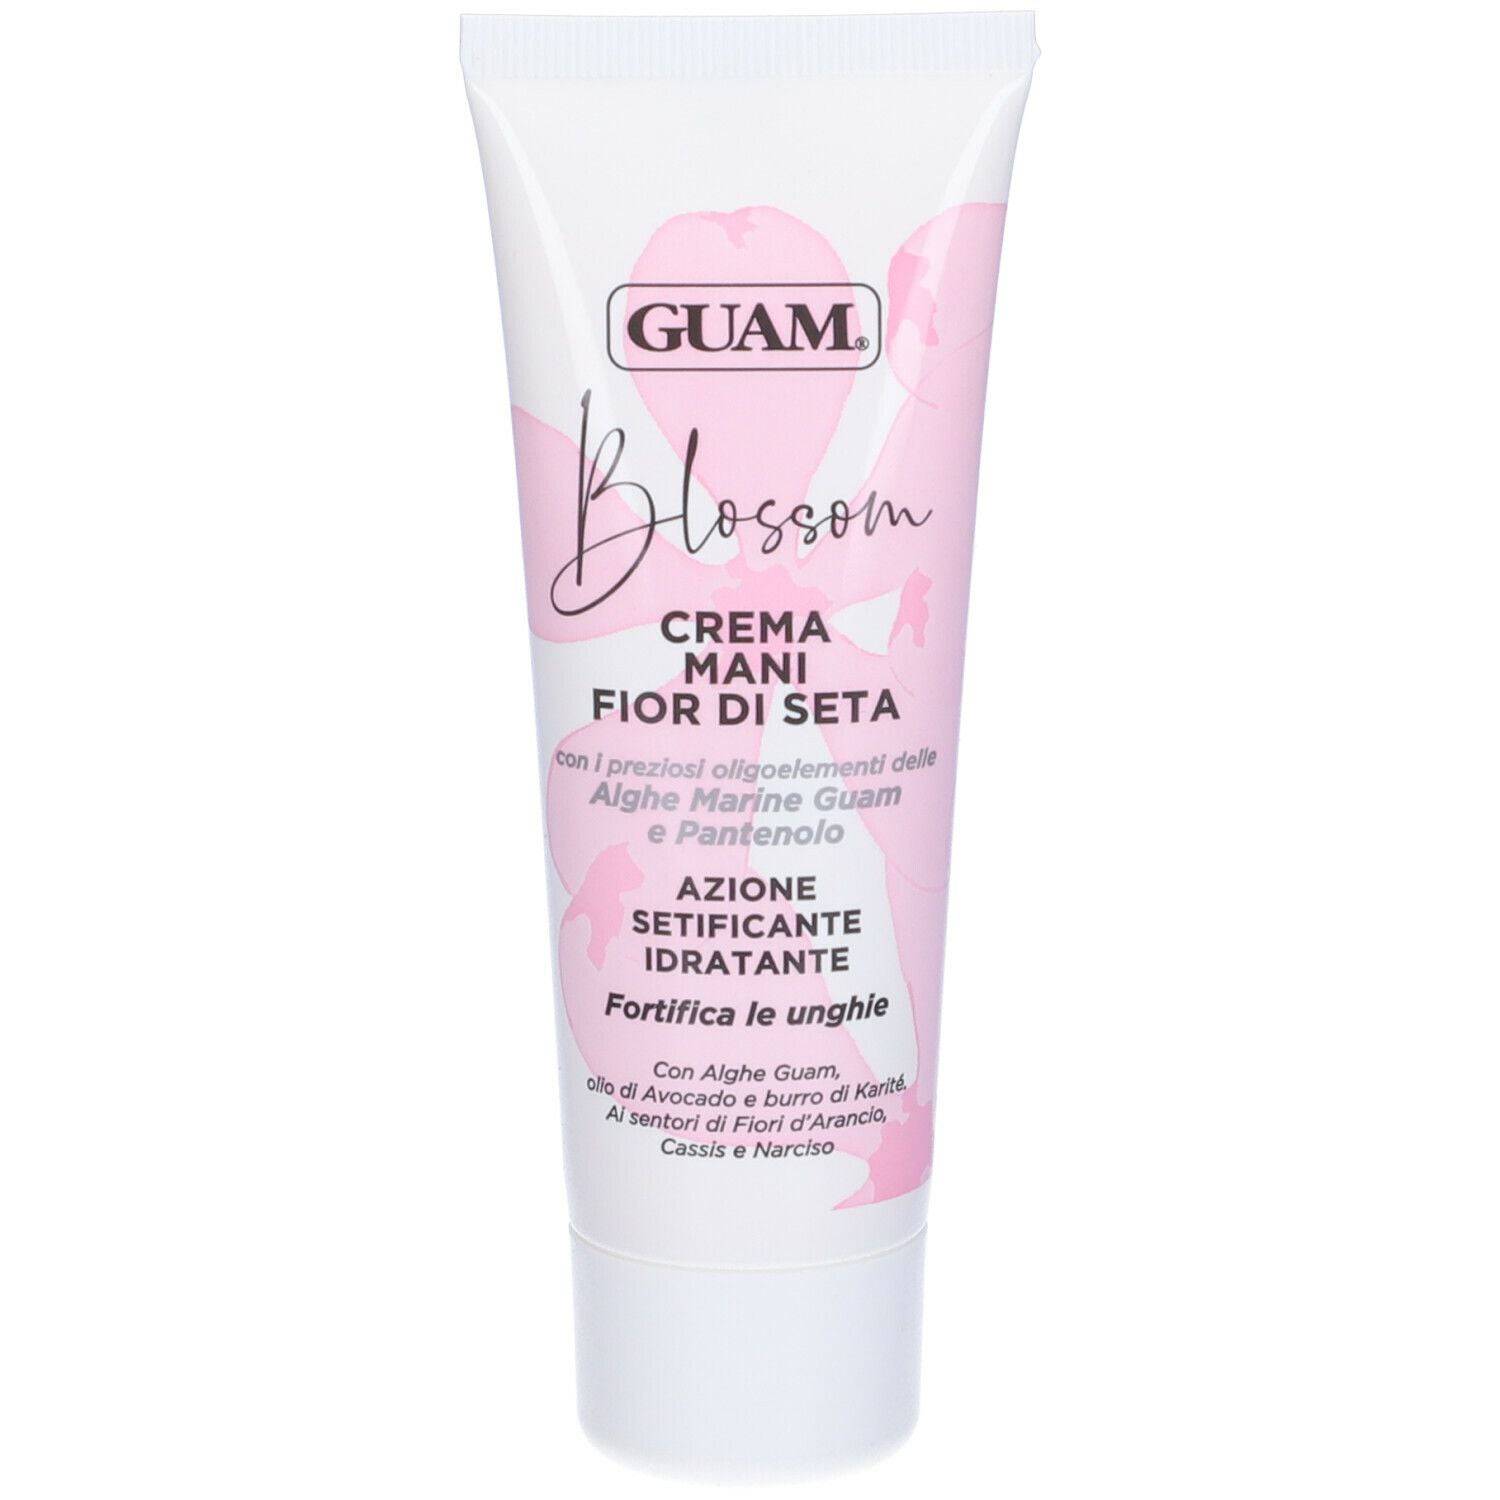 Guam Blossom Crema Mani Fior Di Seta - Jasmine Parfums- [ean]